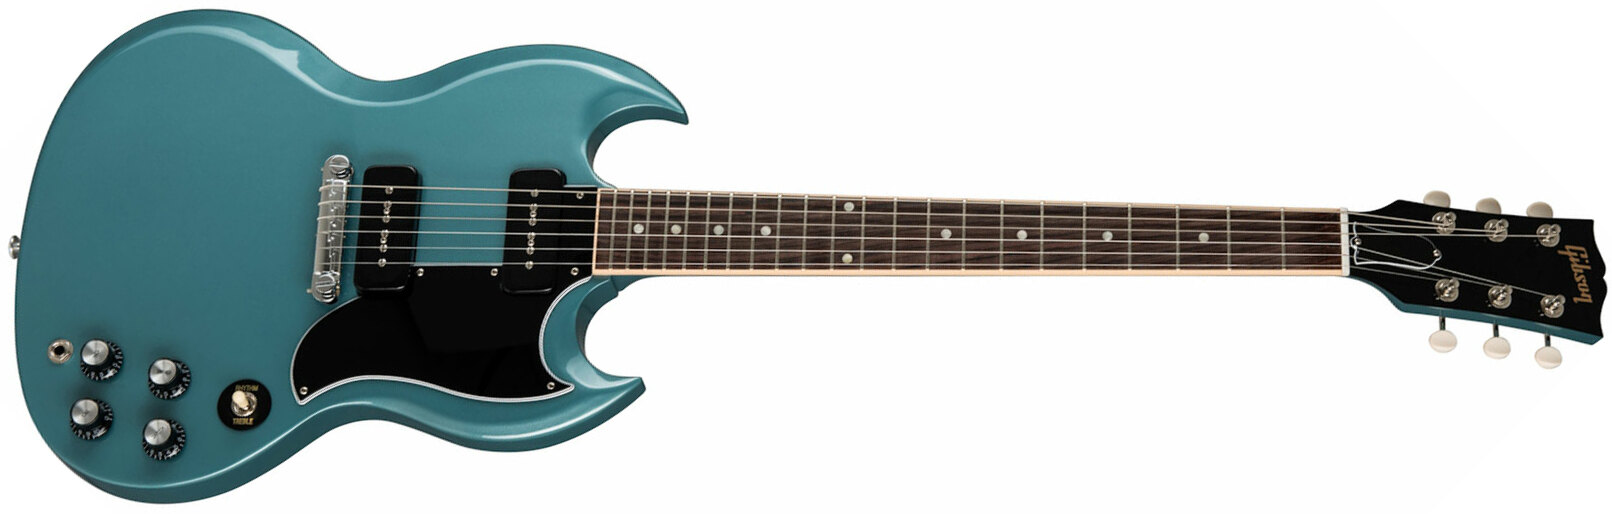 Gibson Sg Special Original P90 - Pelham Blue - Retro rock electric guitar - Main picture